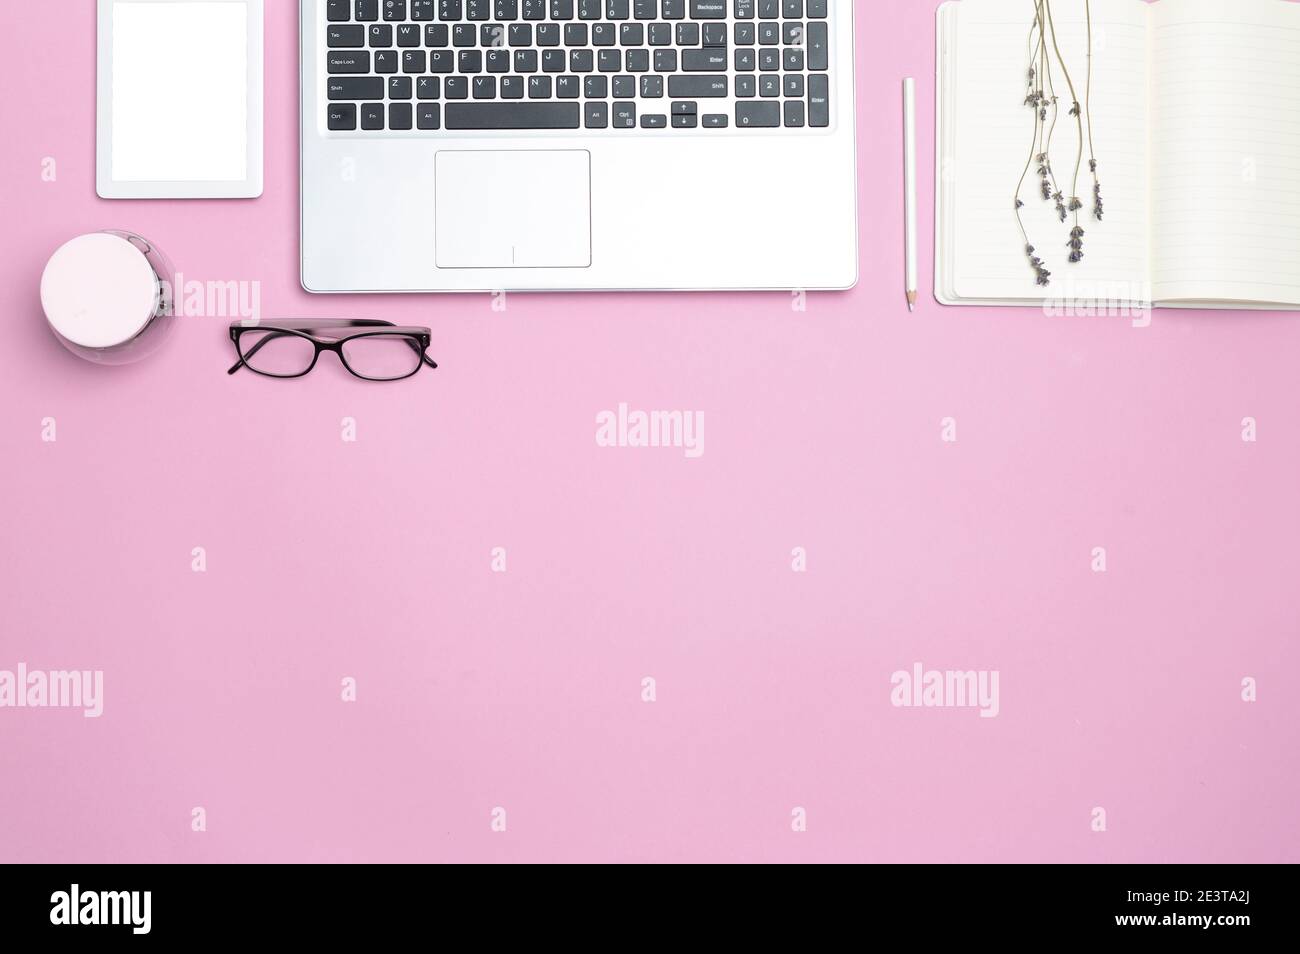 Eleganter, femininer Schreibtisch mit Laptop und modernen Büromerkmalen. Draufsicht. Speicherplatz kopieren. Flacher Raum. Rosa Hintergrund. Stockfoto